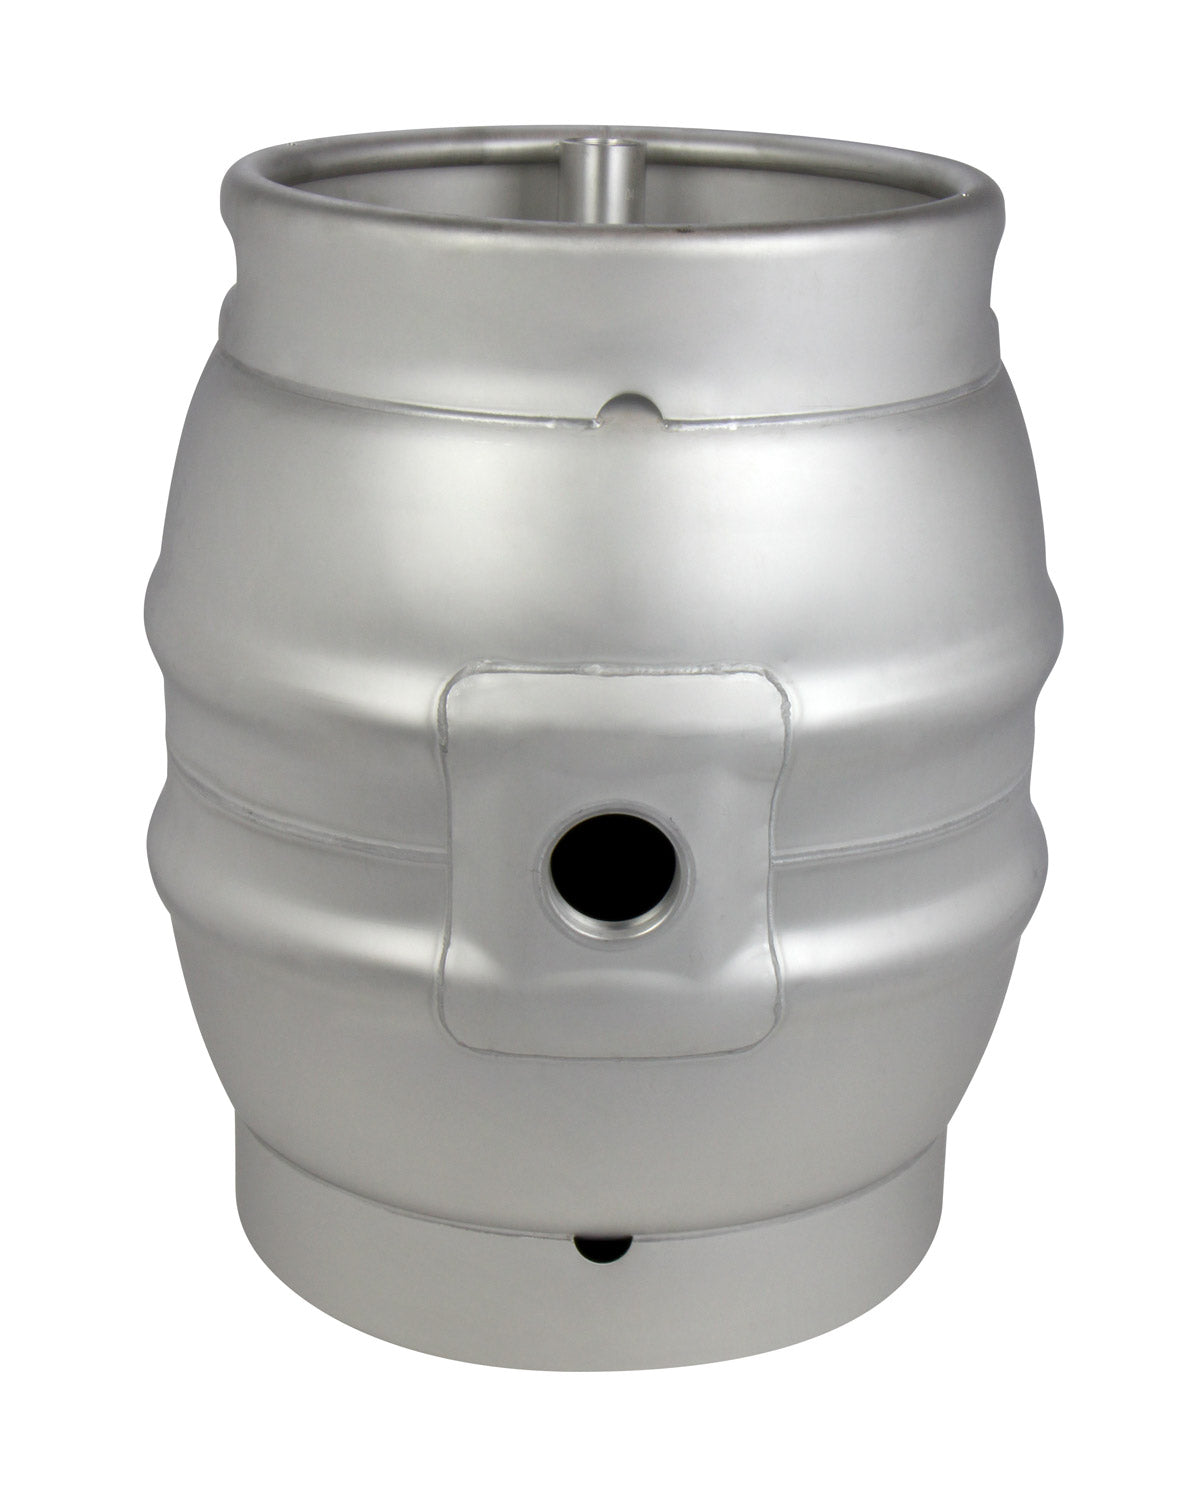 10.8 Gallon Firkin Beer Keg Cask - Used